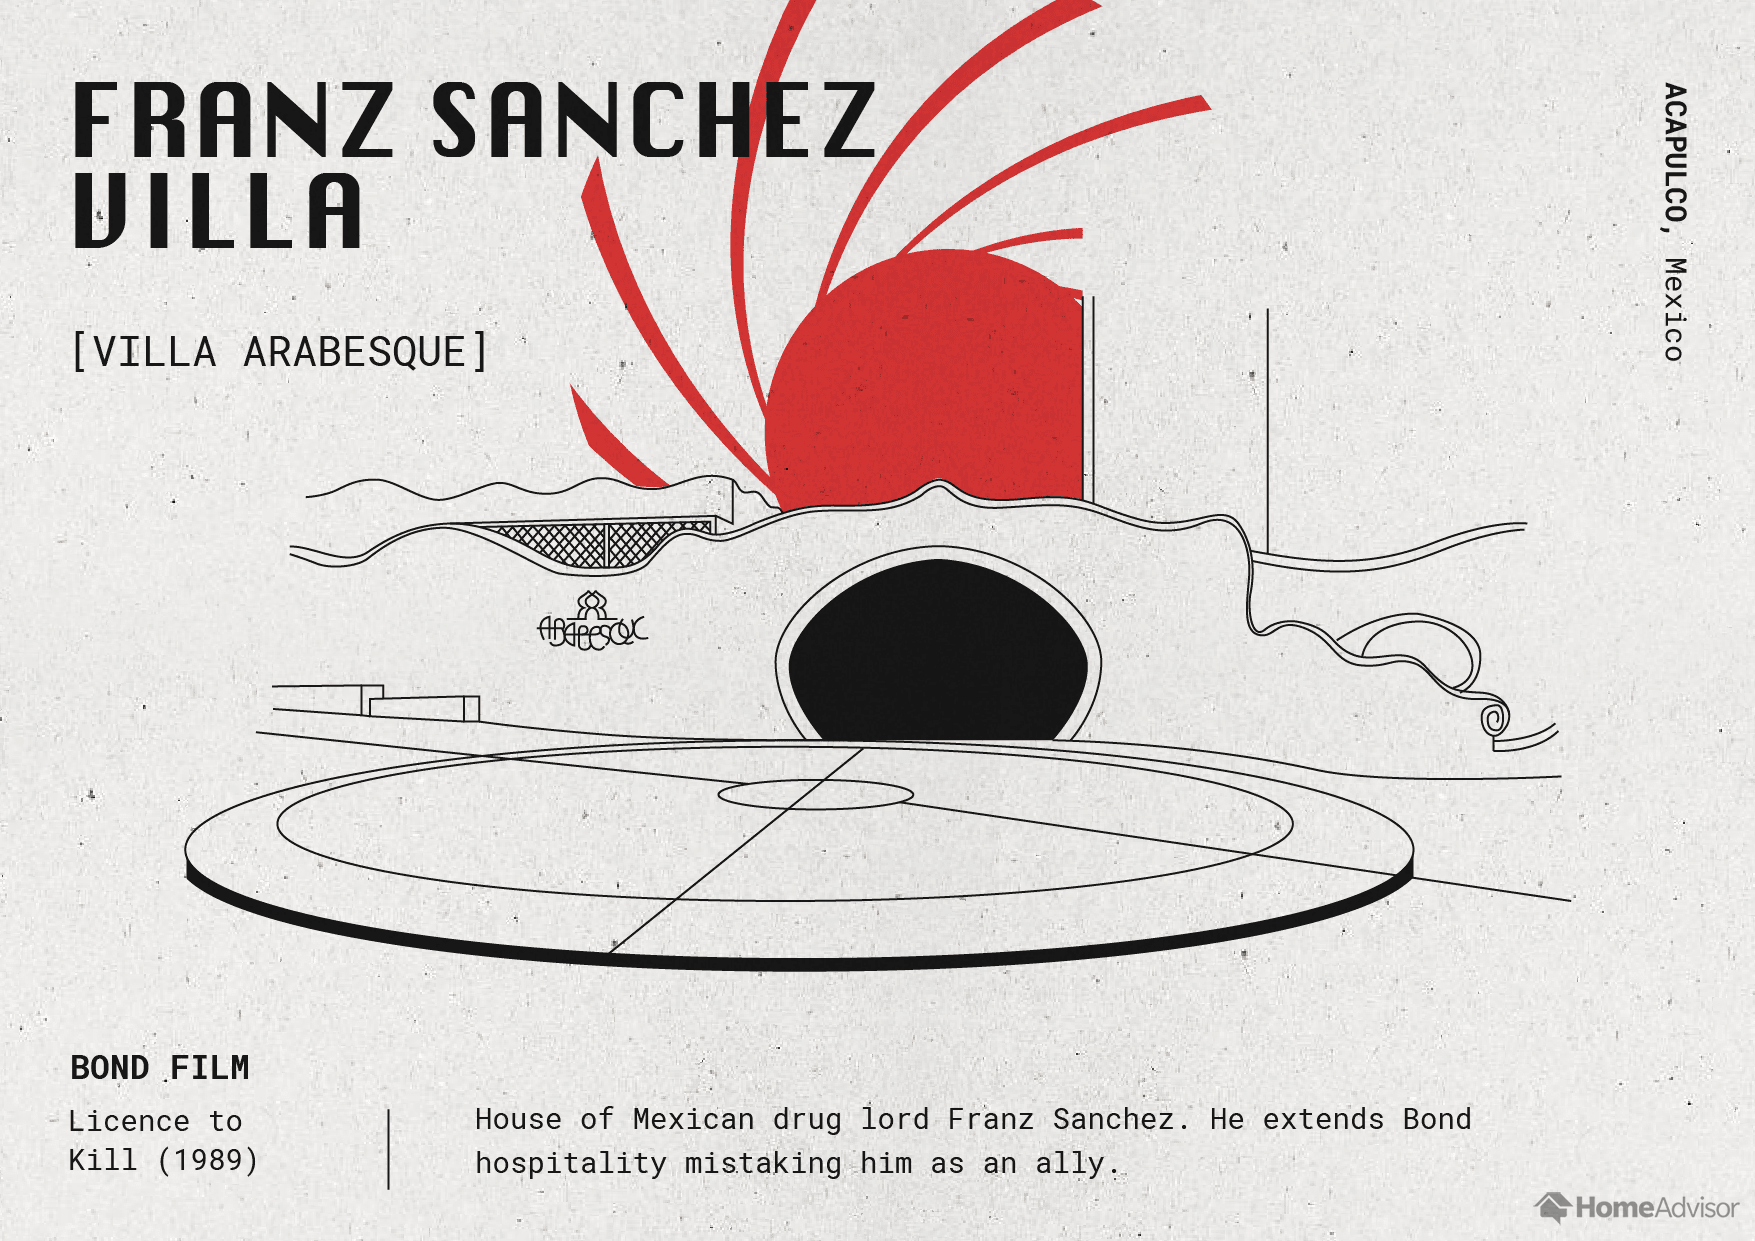 22_The-Architecture-of-James-Bond_Franz-Sanchez-Villa.png